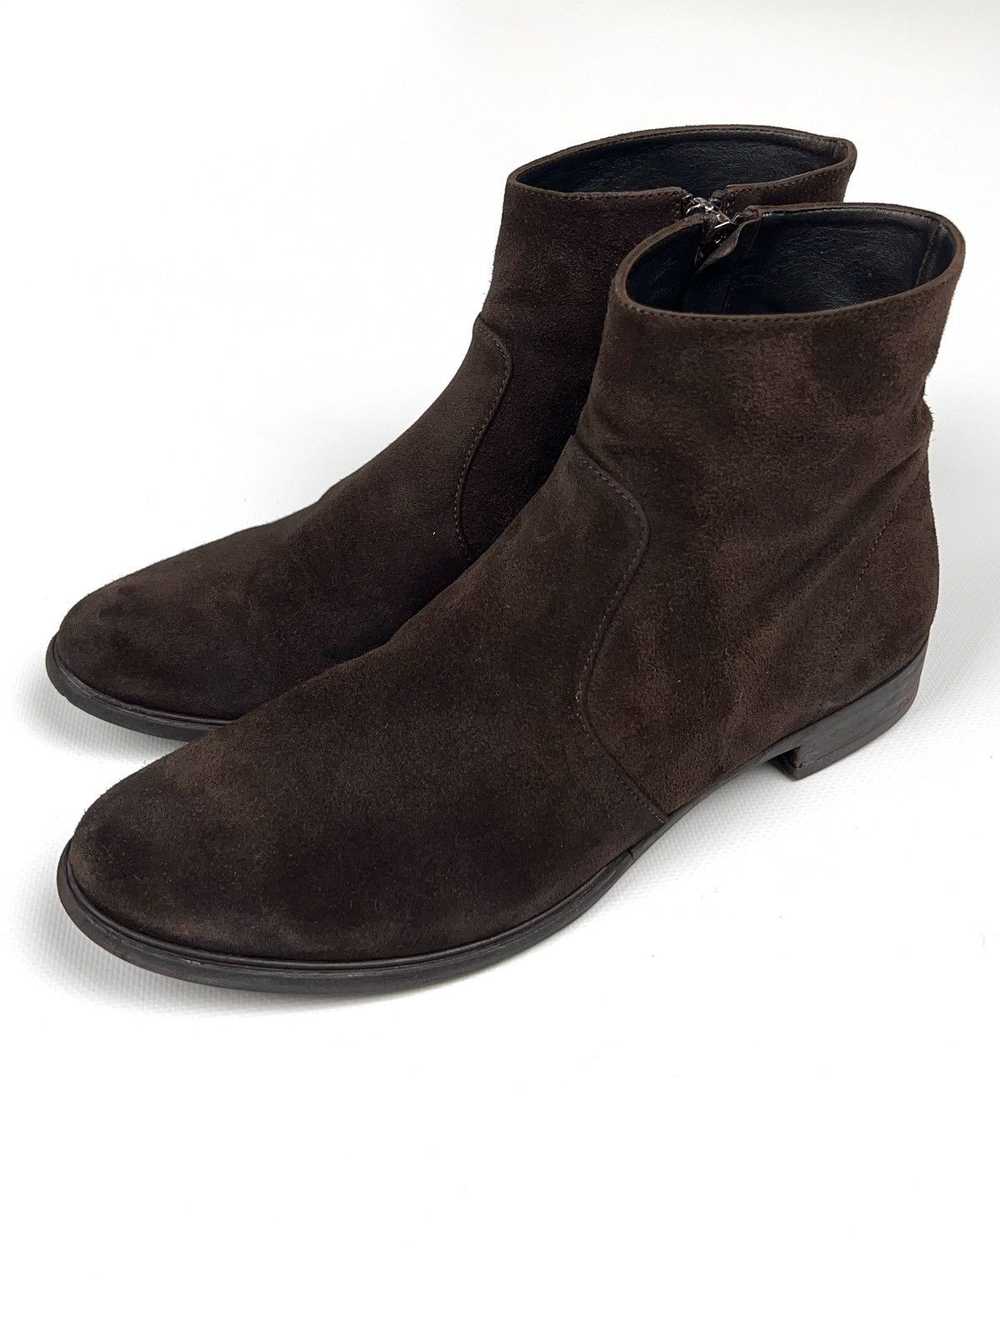 Prada Prada Brown Suede Zip Western Boots Vintage - image 3